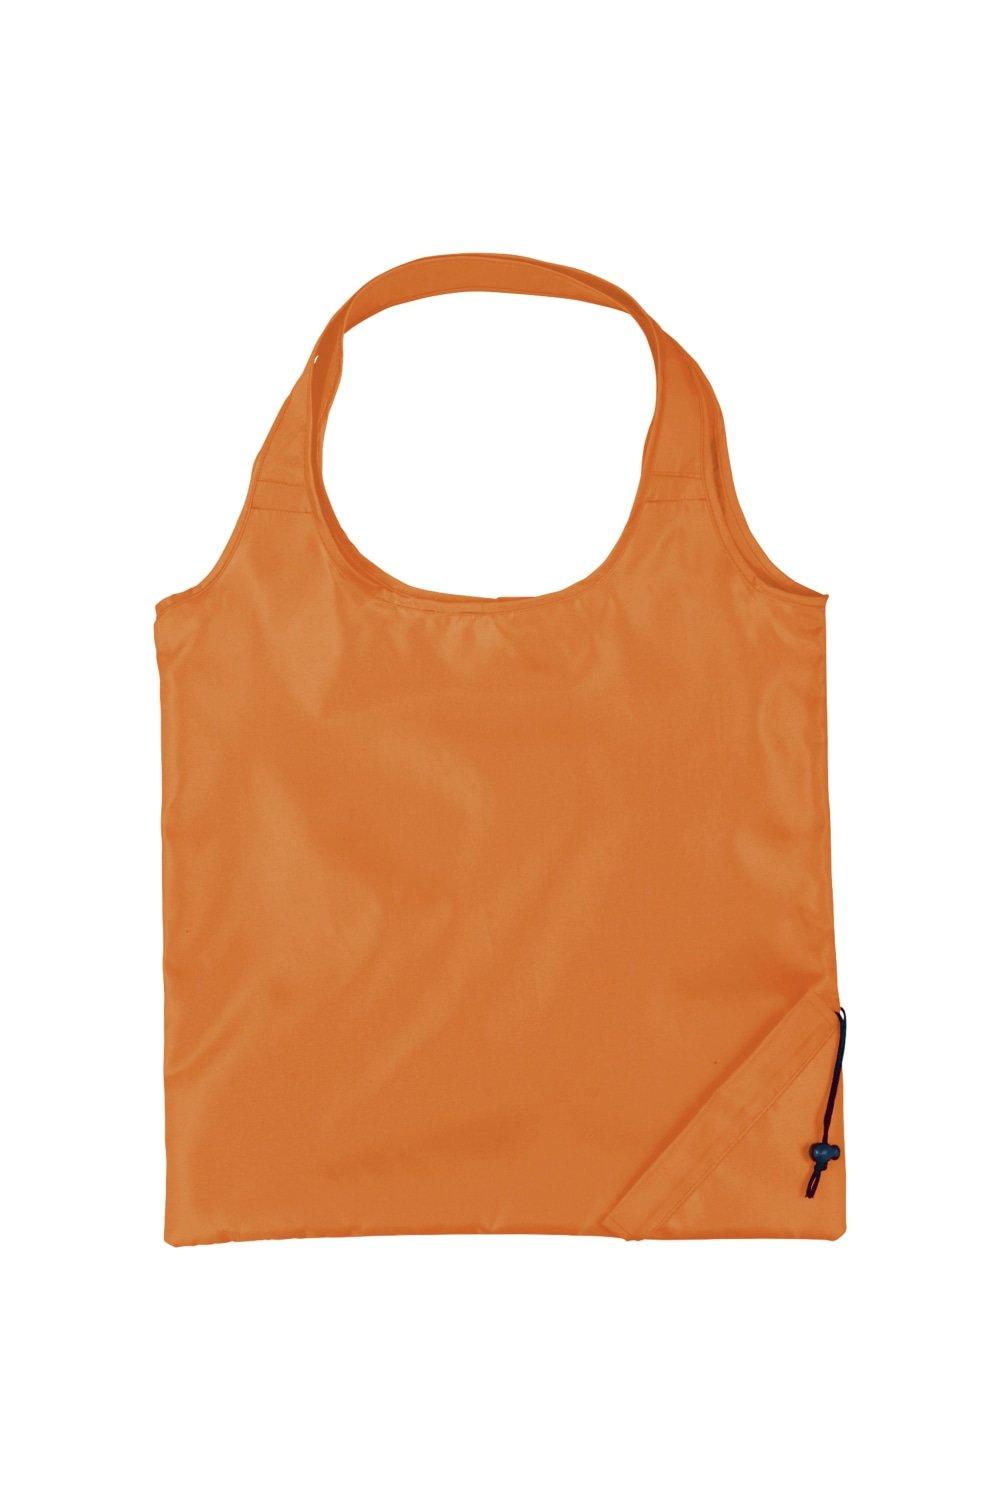 Складная сумка-тоут из полиэстера для бунгало Bullet, оранжевый